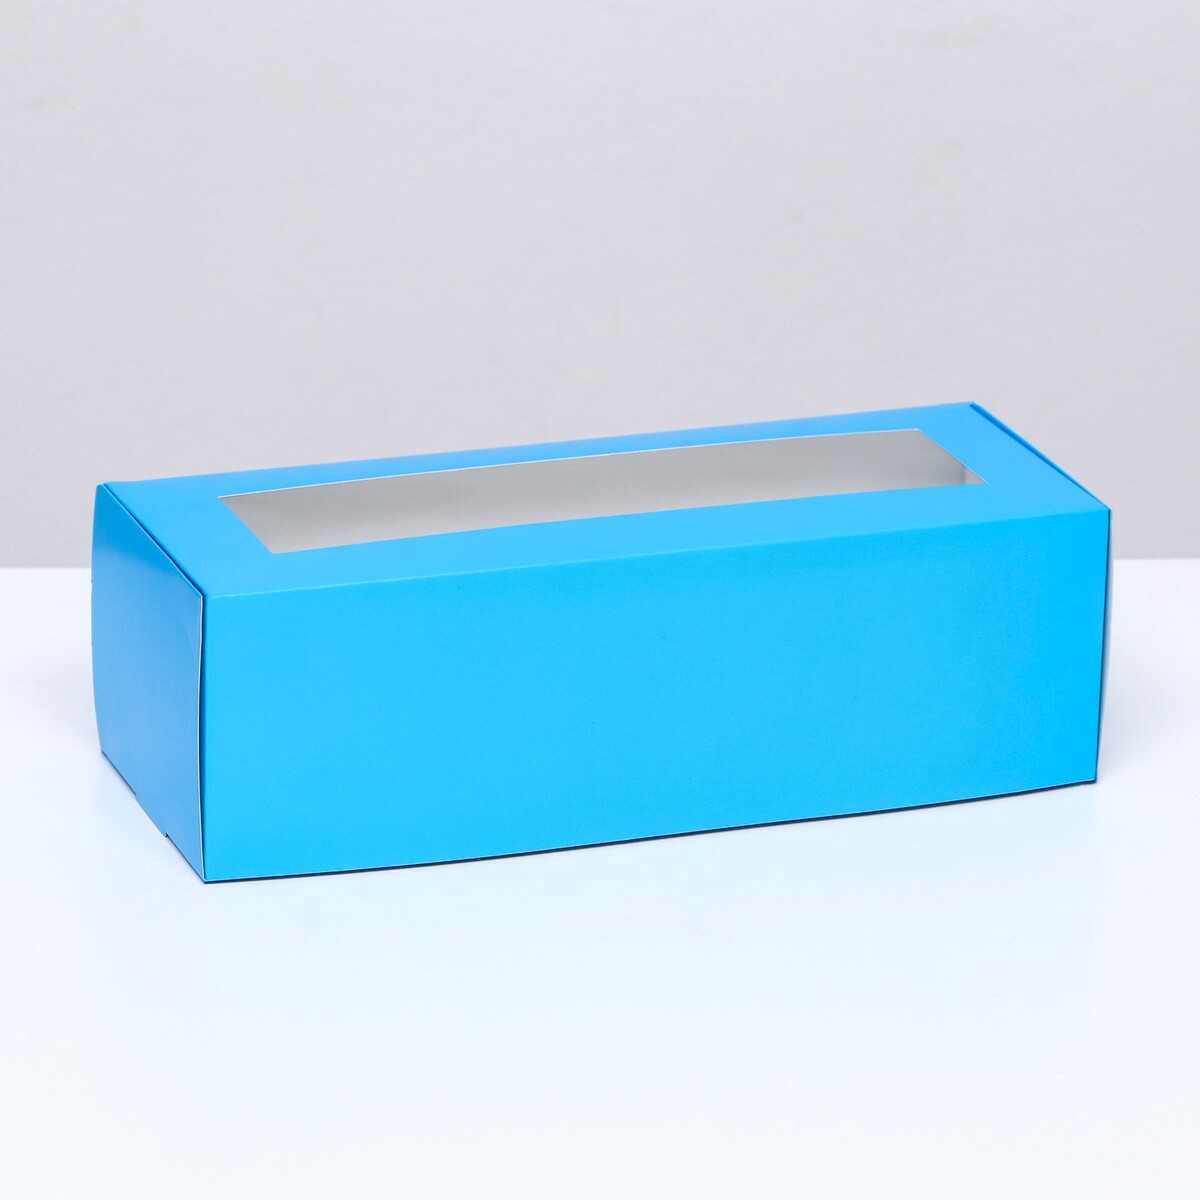 Коробка складная с окном под рулет, голубая, 26 х 10 х 8 см коробка под рулет белая 30 х 12 х 12 см